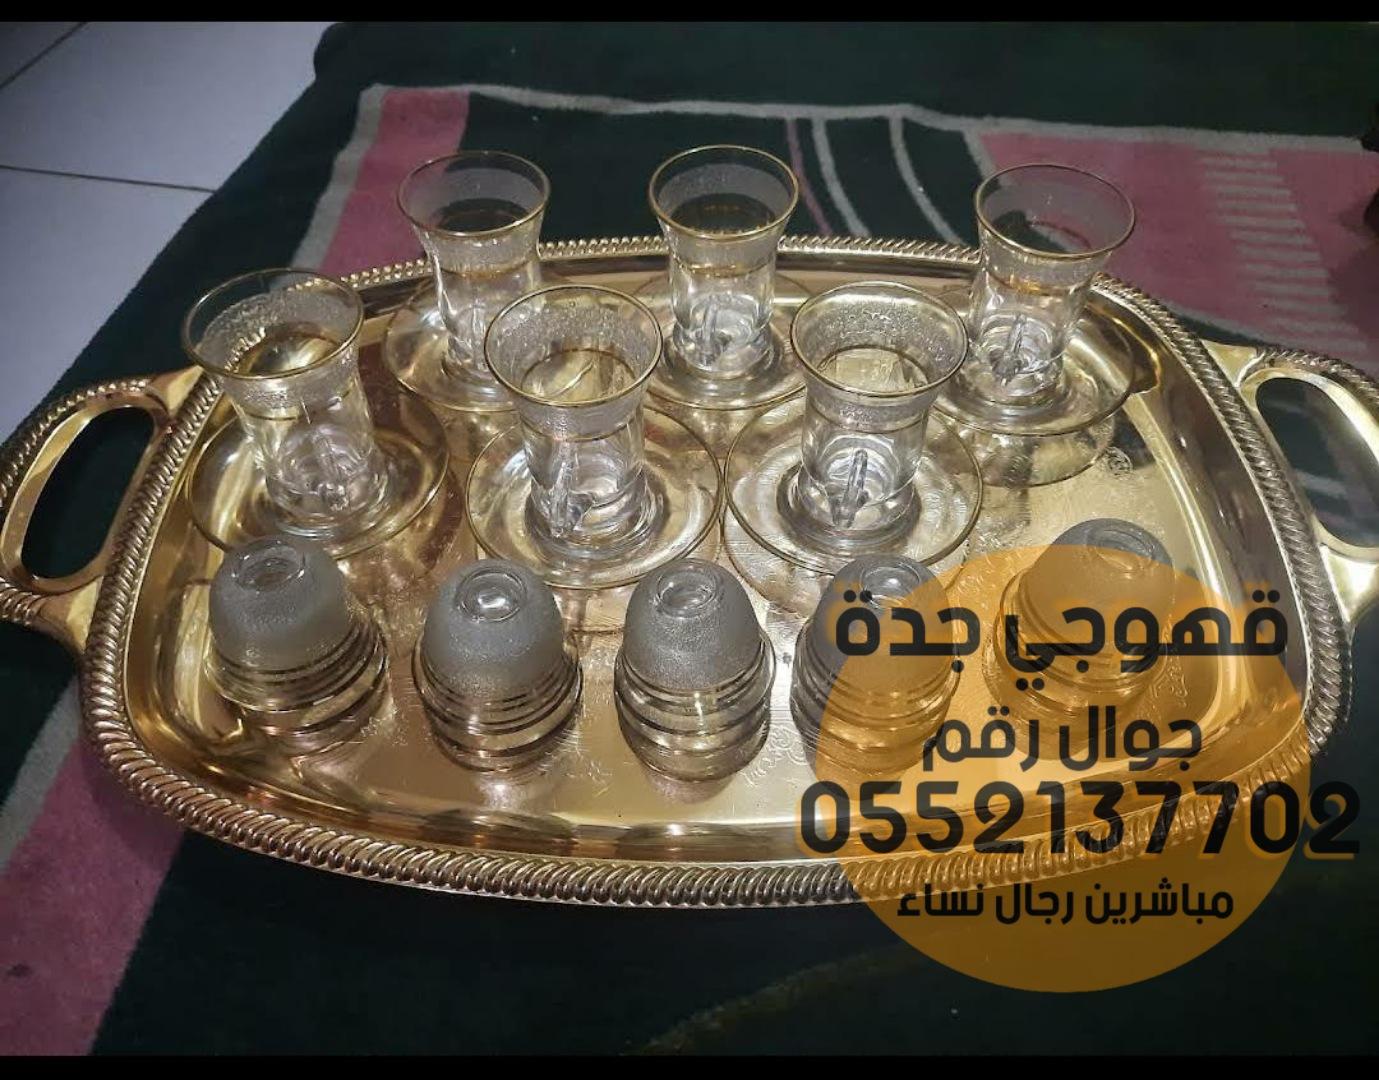 صبابين قهوة و مباشرات ضيافه في جدة,0552137702 332505000